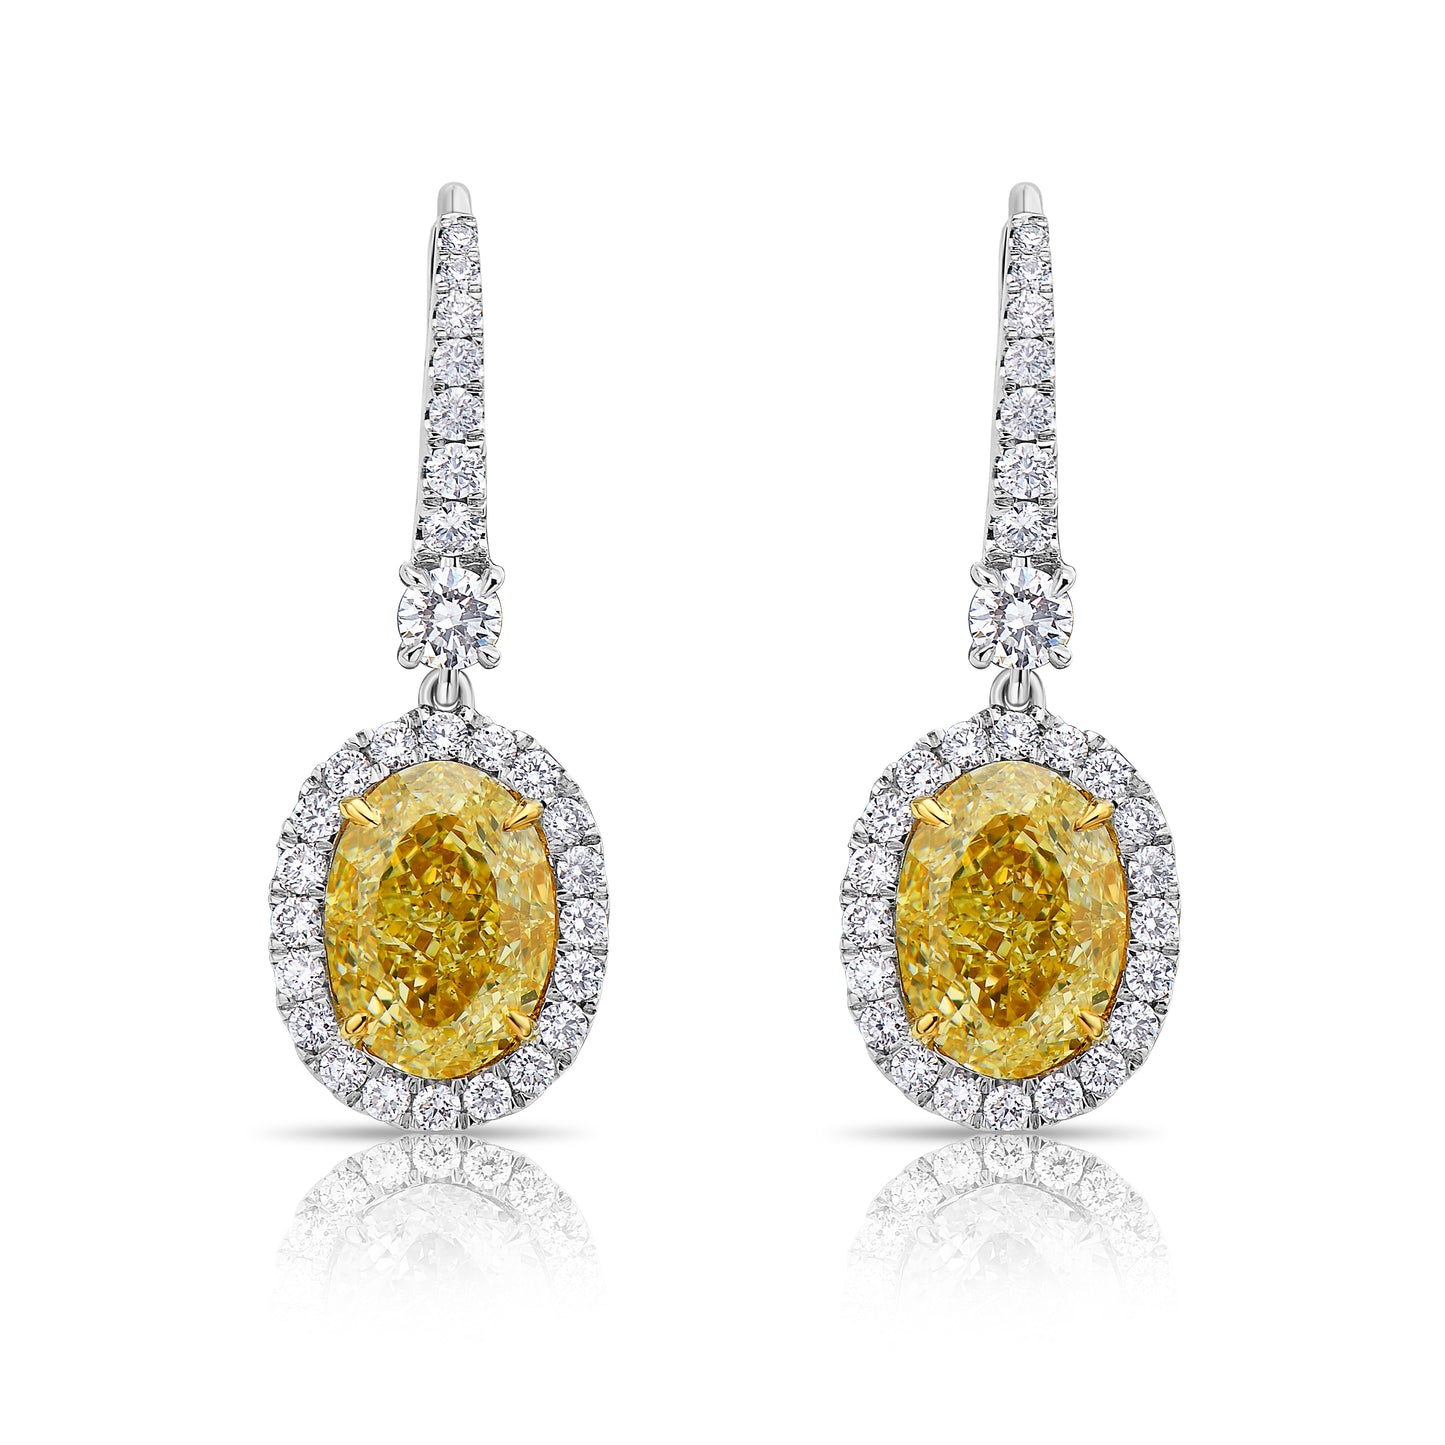 Yellow diamond earrings, diamond drop earrings, canary yellow diamond, fancy light yellow diamond, yellow diamond, yellow diamond earrings, yellow diamond oval, yellow oval diamond